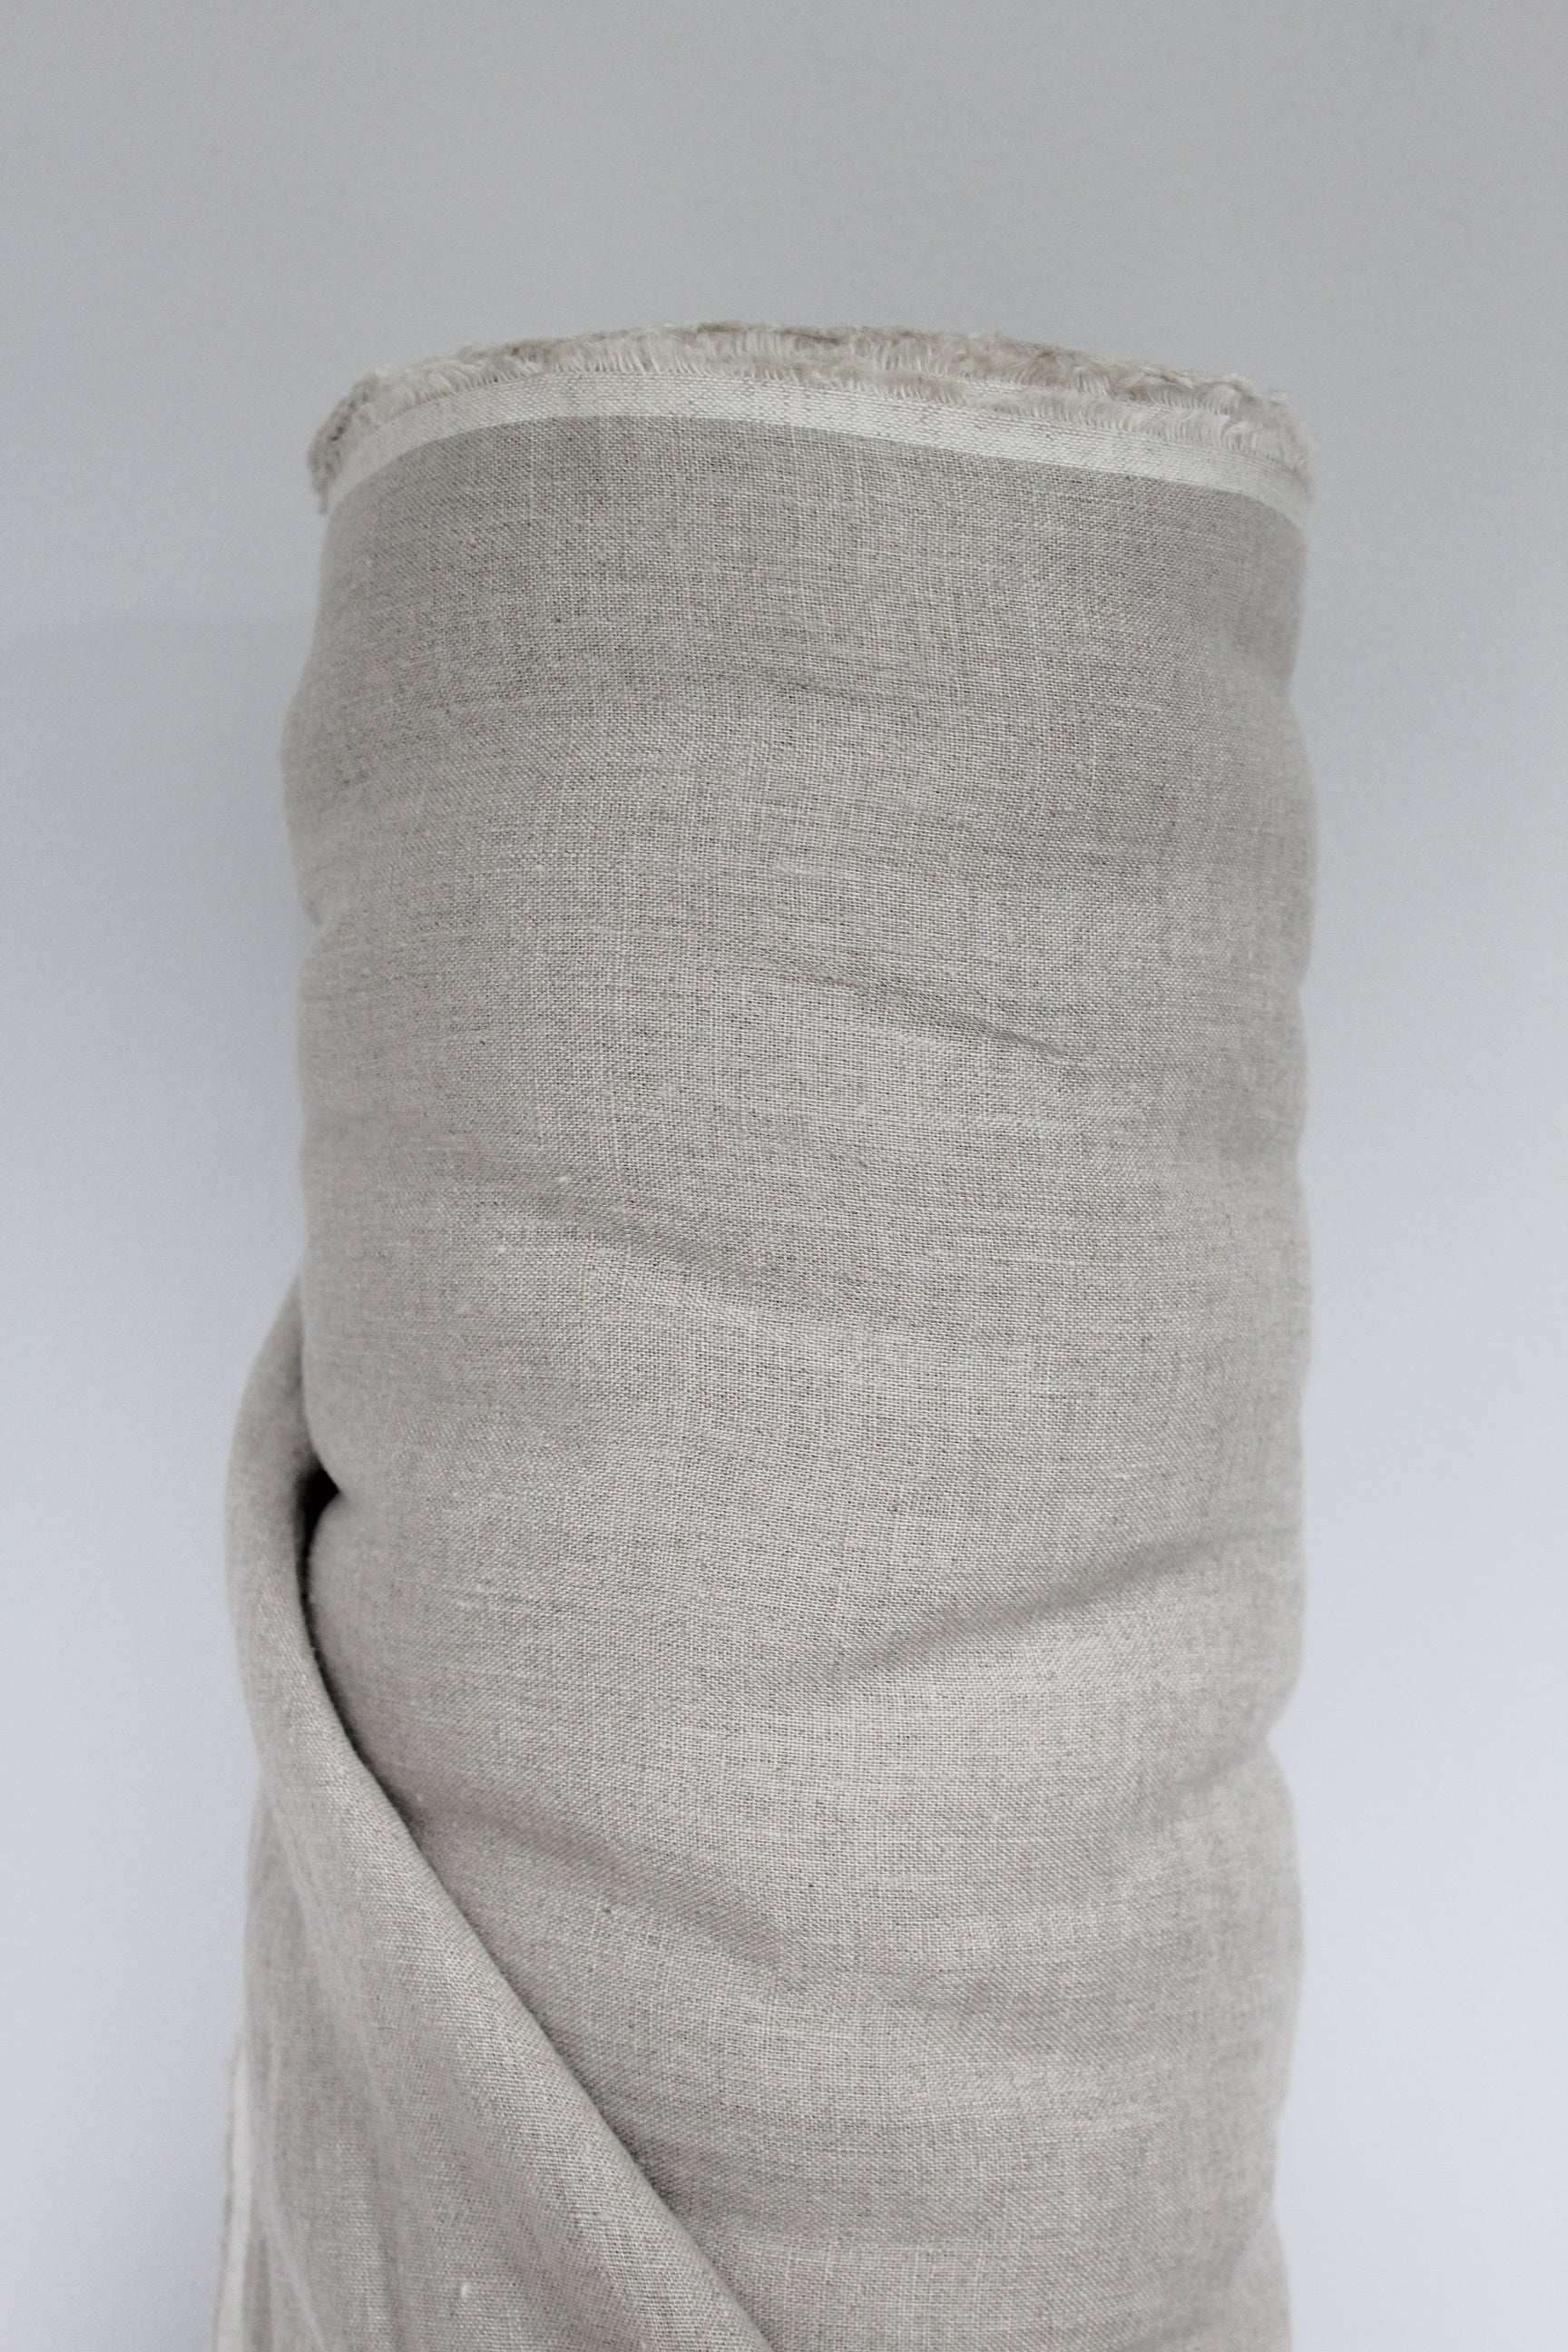 Siena Sand Linen Fabric - AVLEN